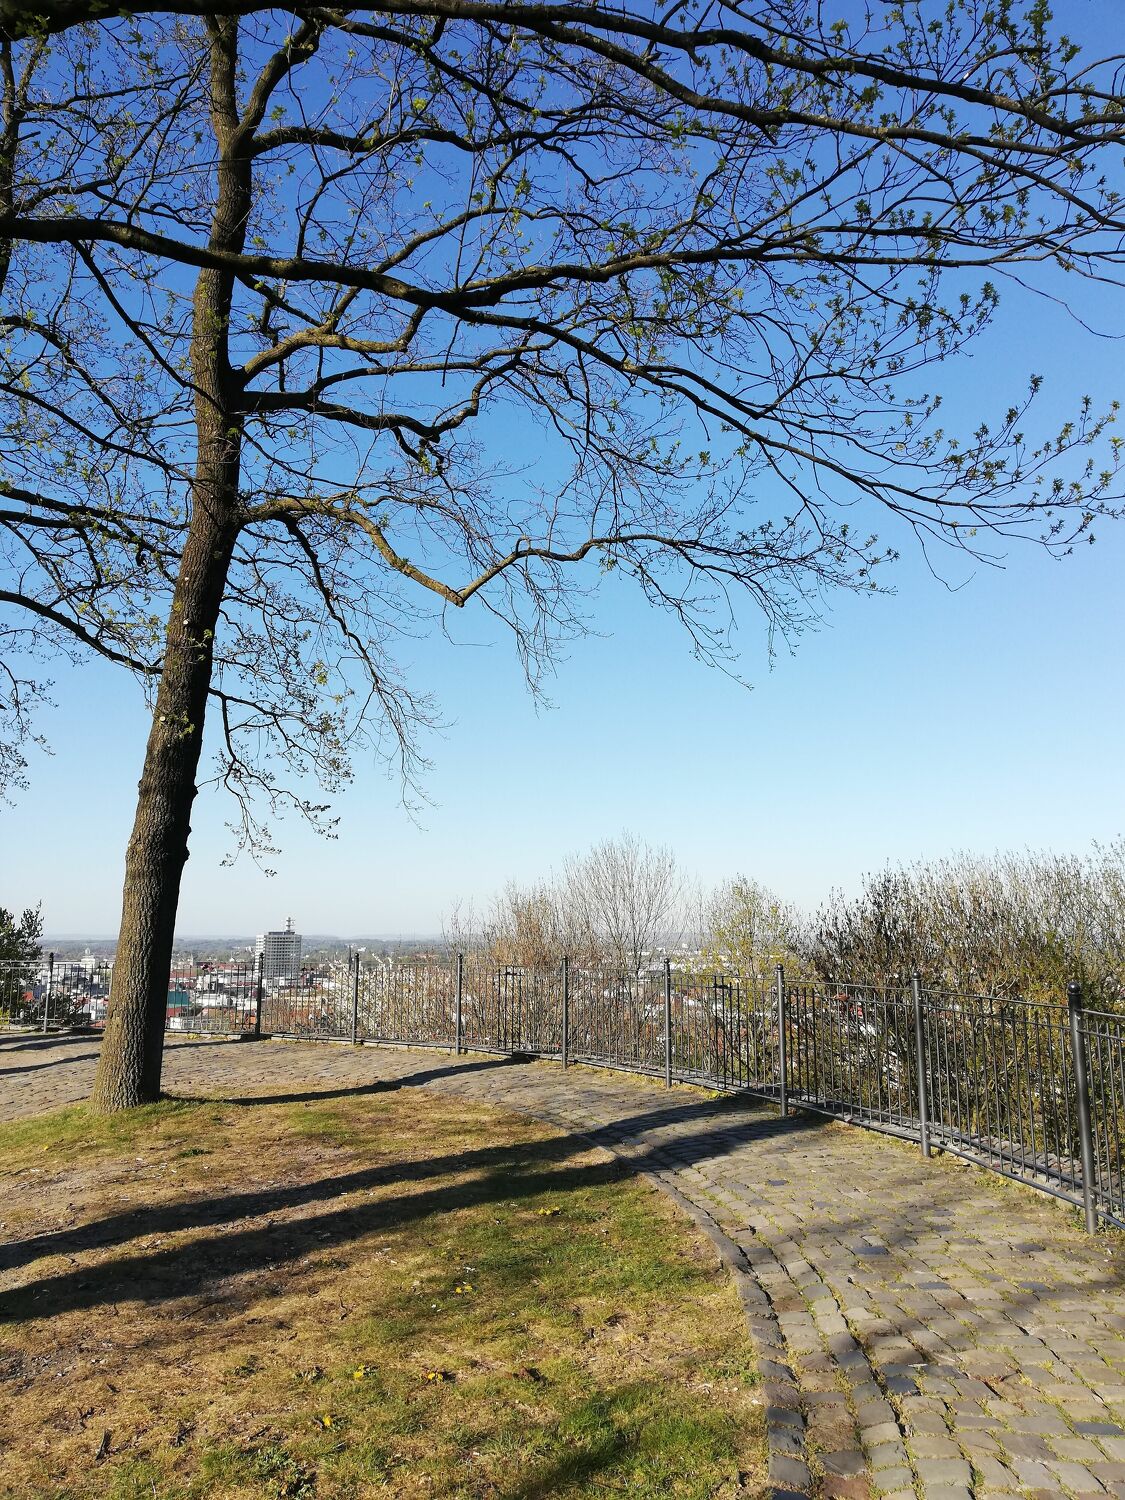 Bild mit Natur, Landschaften, Baum, Blauer Himmel, Norddeutschland, Aussichtspunkt, Nordrhein Westfalen, Sparrenburg, Bielefeld